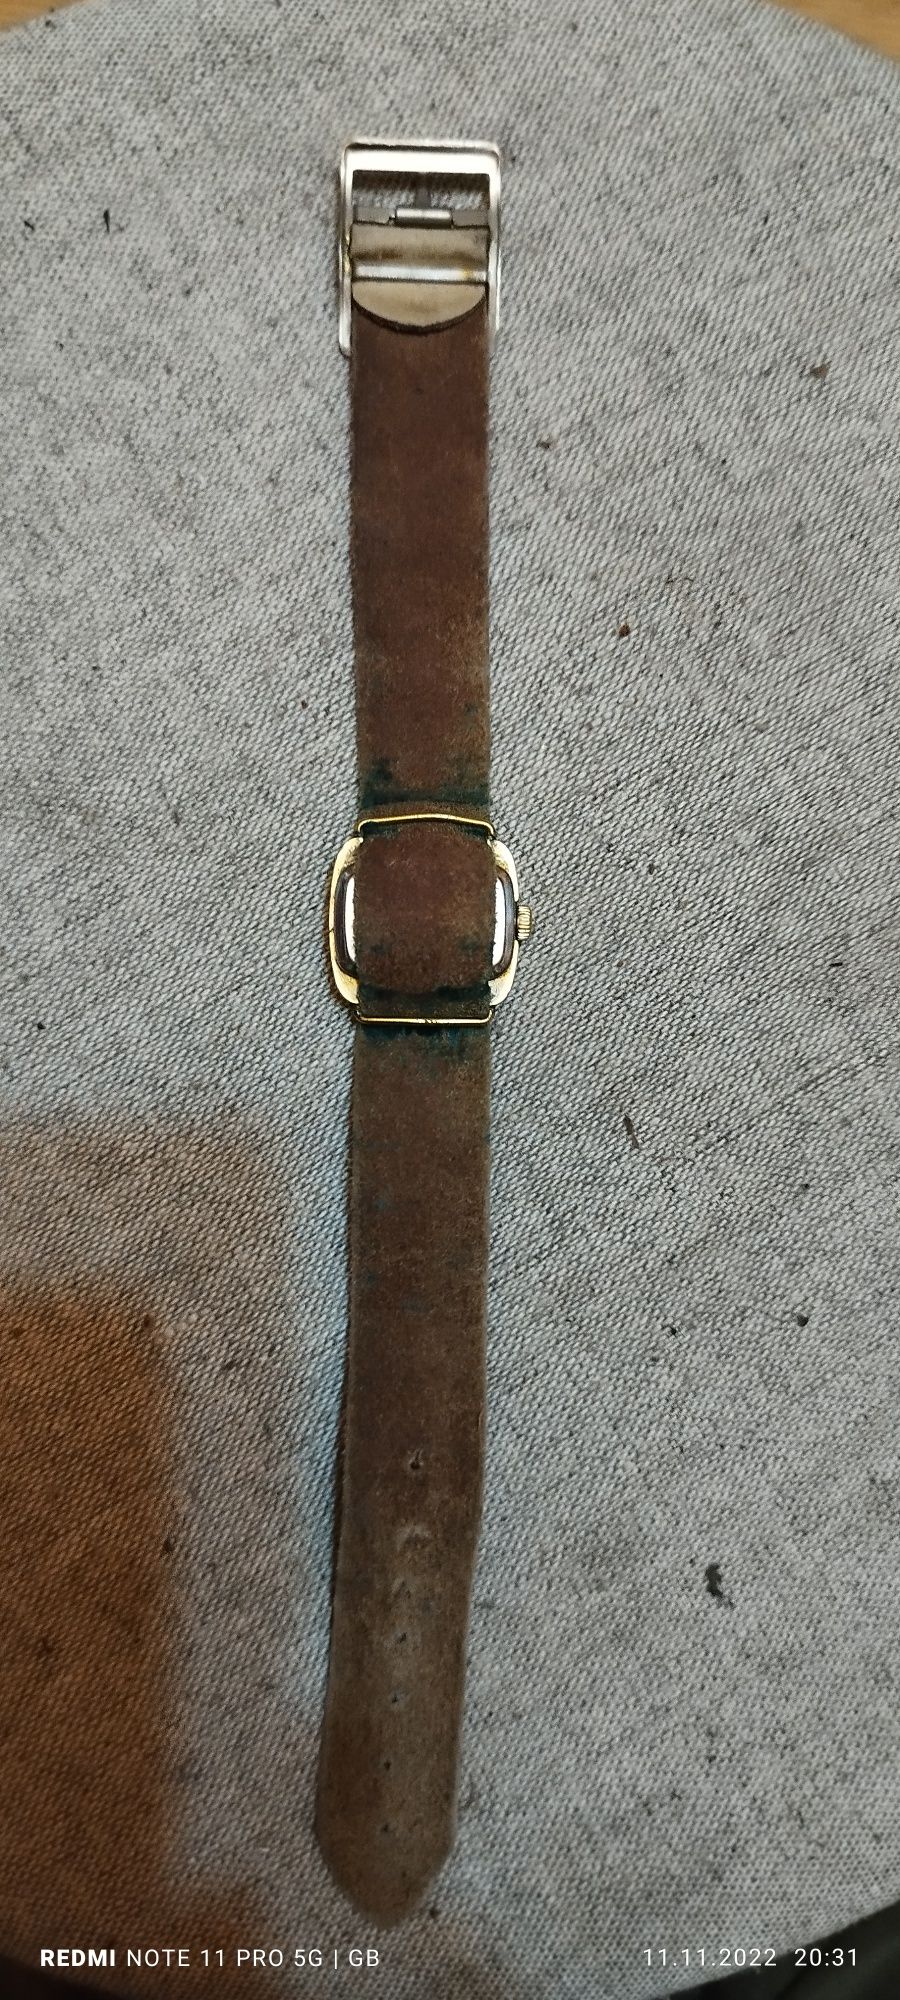 Sprzedam stary zegarek niemiecki Glashütte lata 60-70